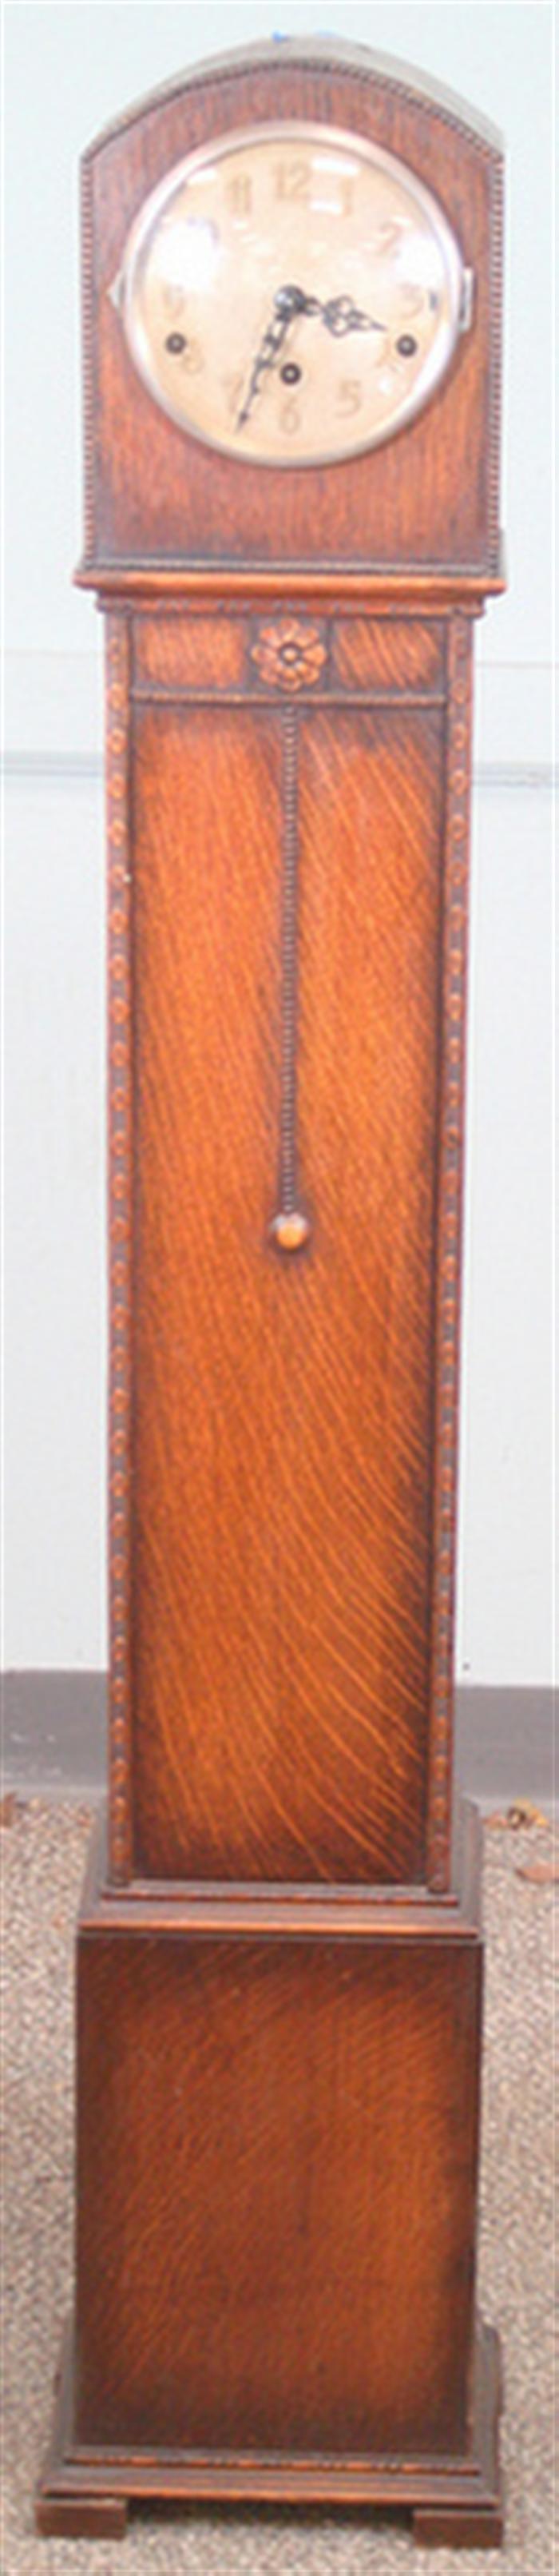 Miniature oak German tall clock, spring